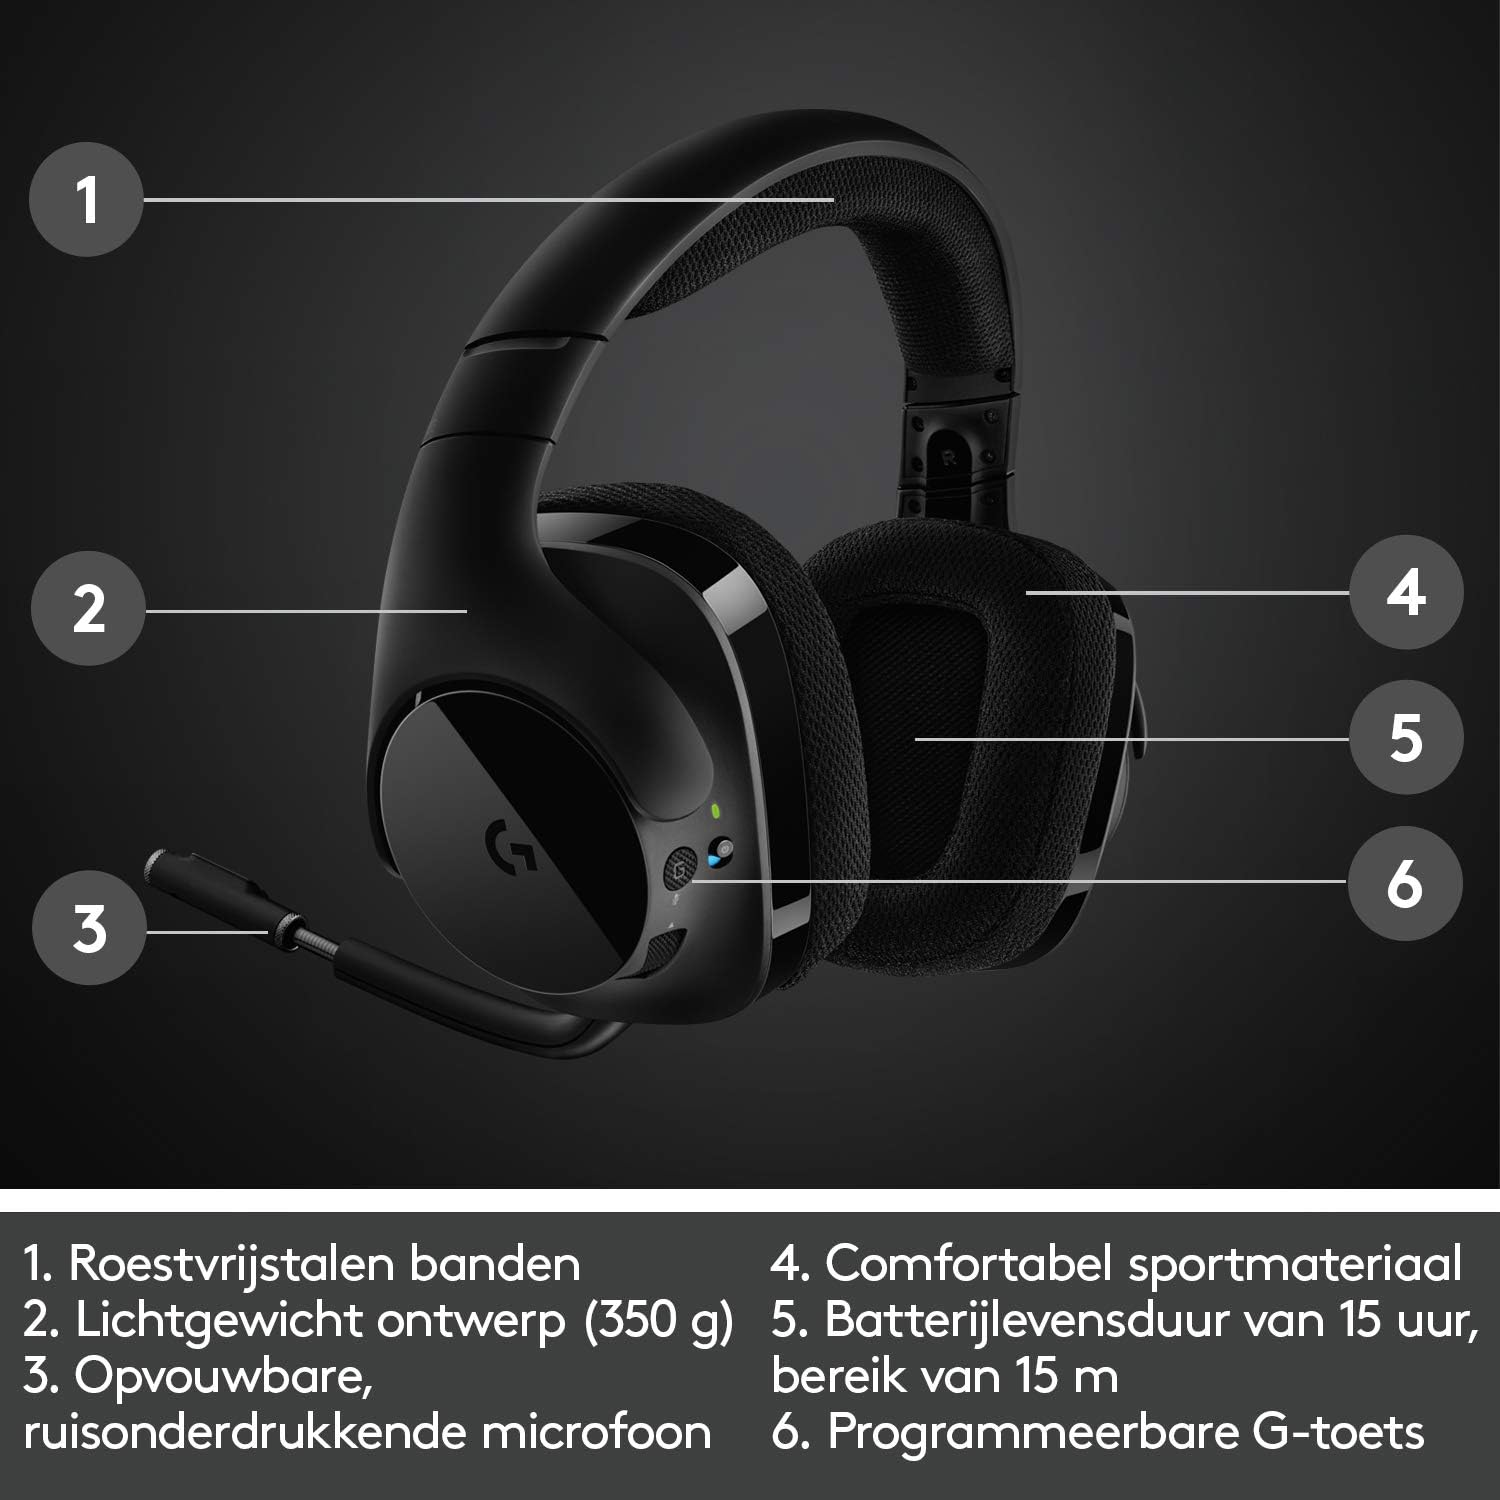 Logitech G533 Draadloze Gaming Headset, 7.1 Surround sound, DTS Headphone:X, 40mm Pro-G drivers, Noise Cancelling Microfoon, 2.4GHz draadloos, Lichtgewicht, Batterijduur 15 uur, PC/Mac - Zwart